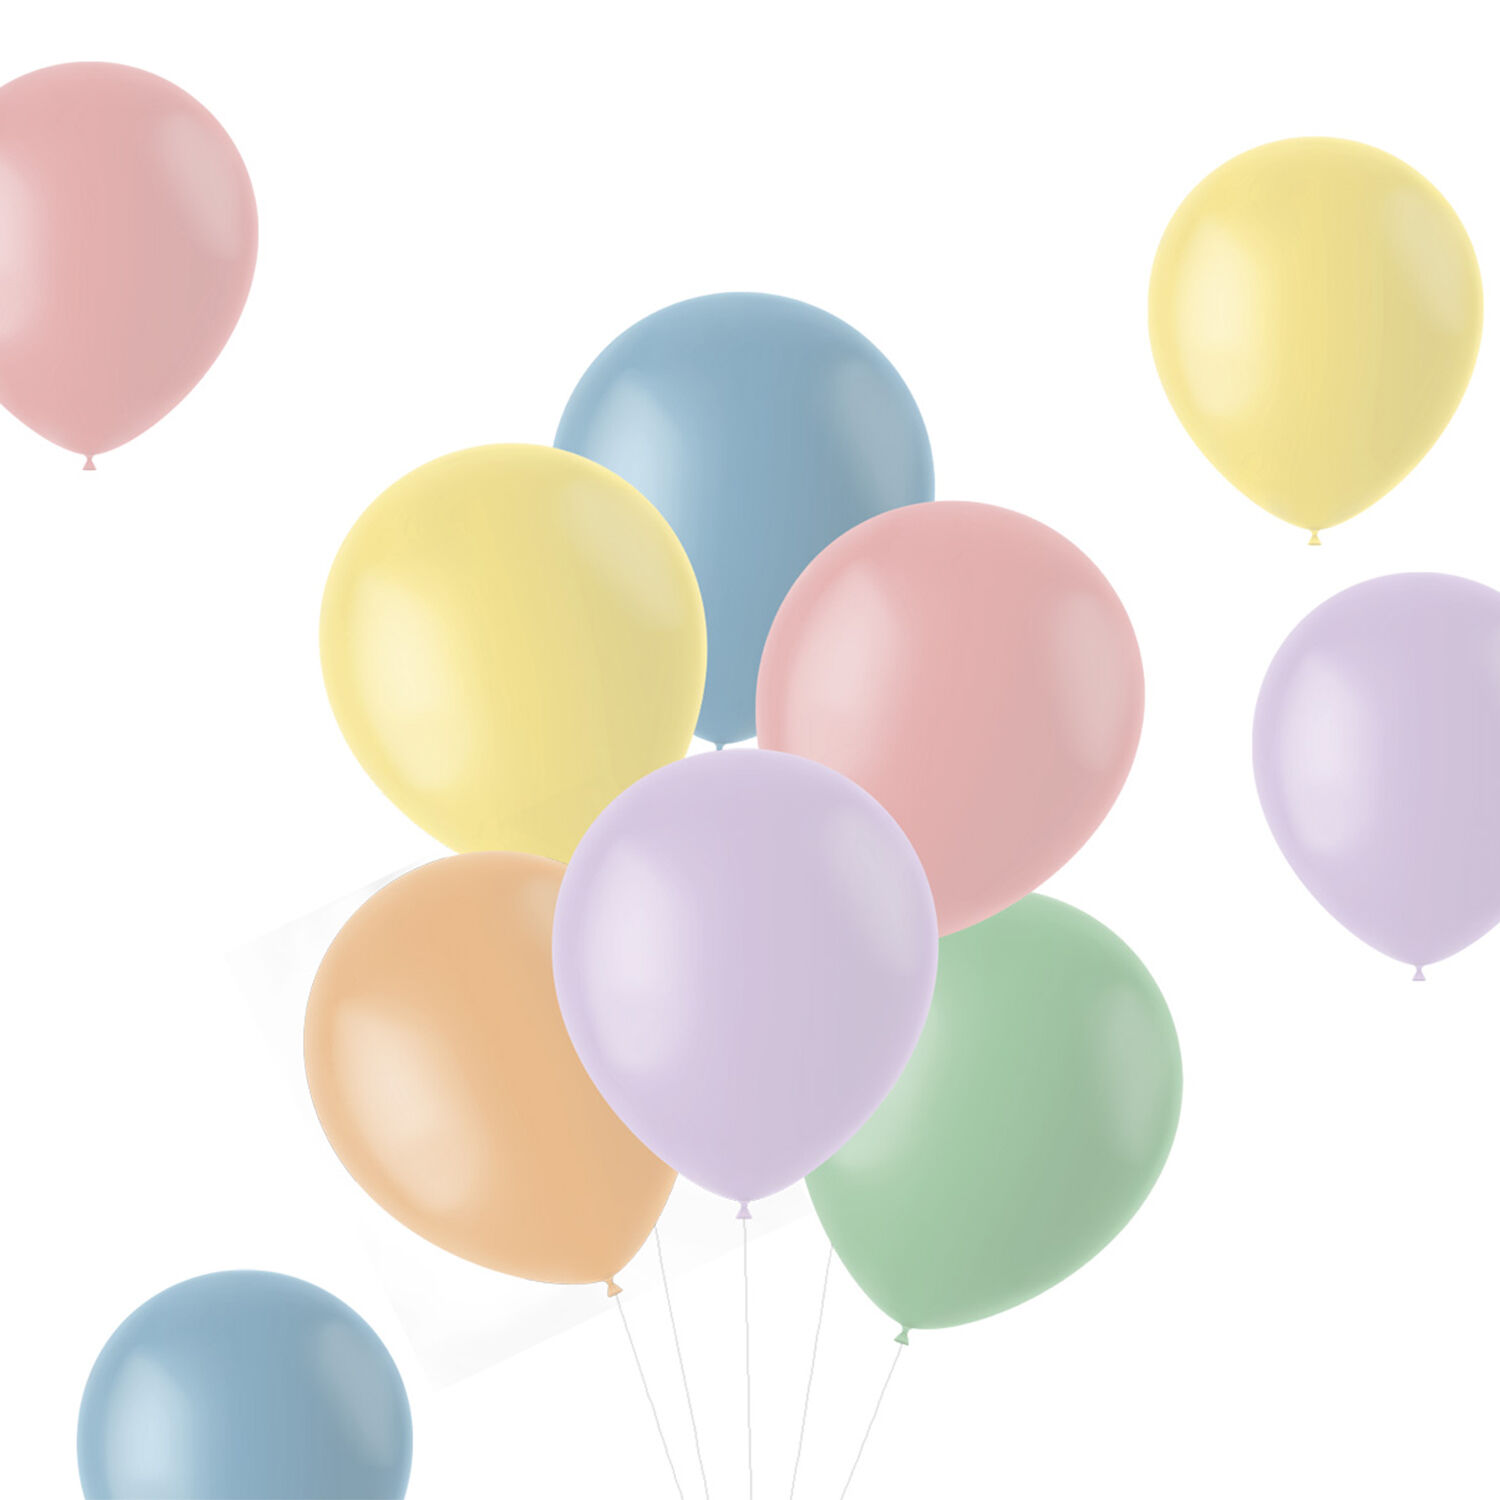 NEU Latex-Luftballons matt, 33cm, Pastelltne bunt gemischt, 10 Stck